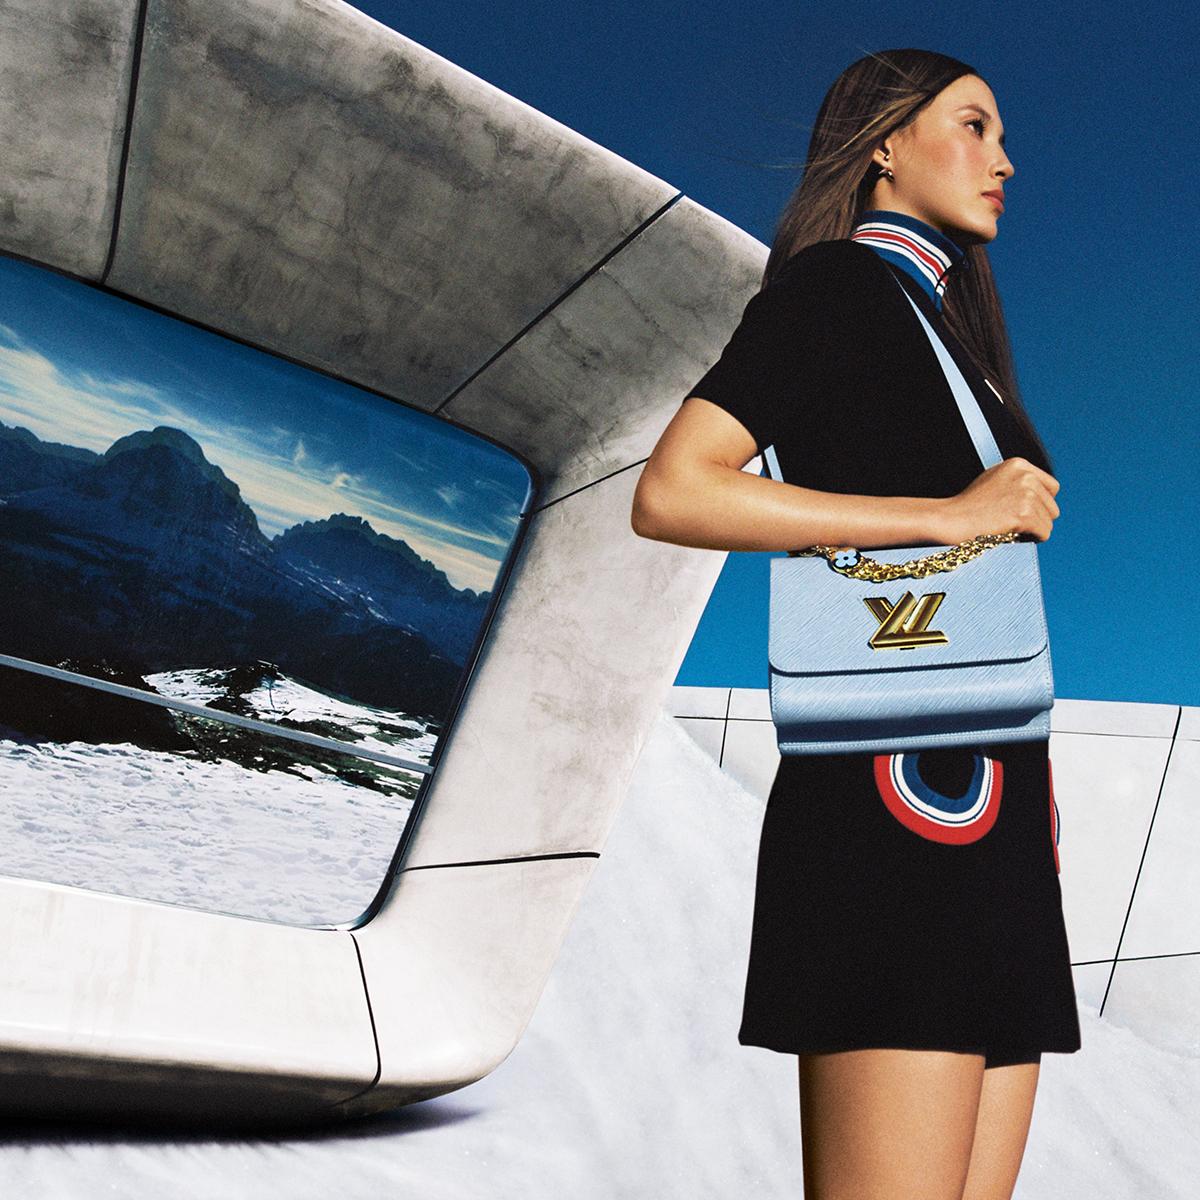 Louis Vuitton on X: #EileenGu and the Twist. The freeski champion